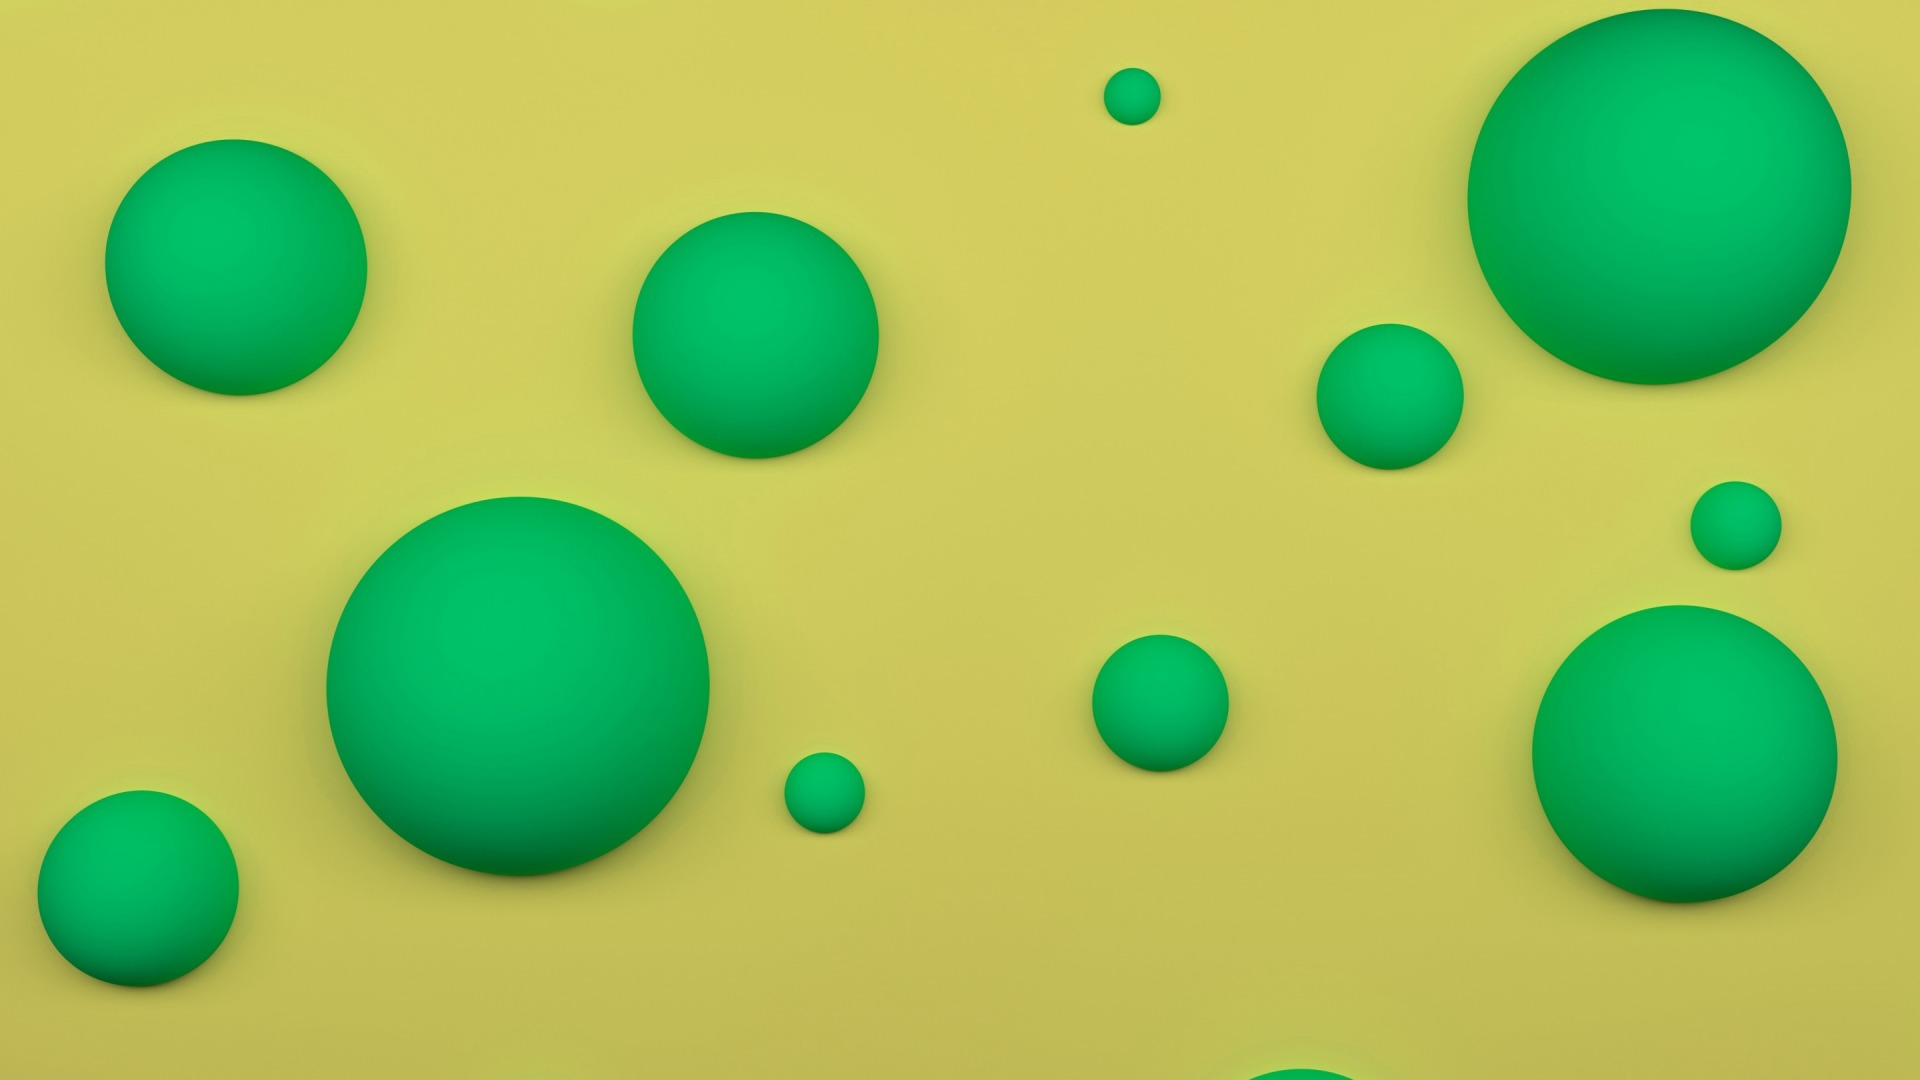 عکس دیجیتالی 3D با دایره سبز و زمینه زرد برای مک